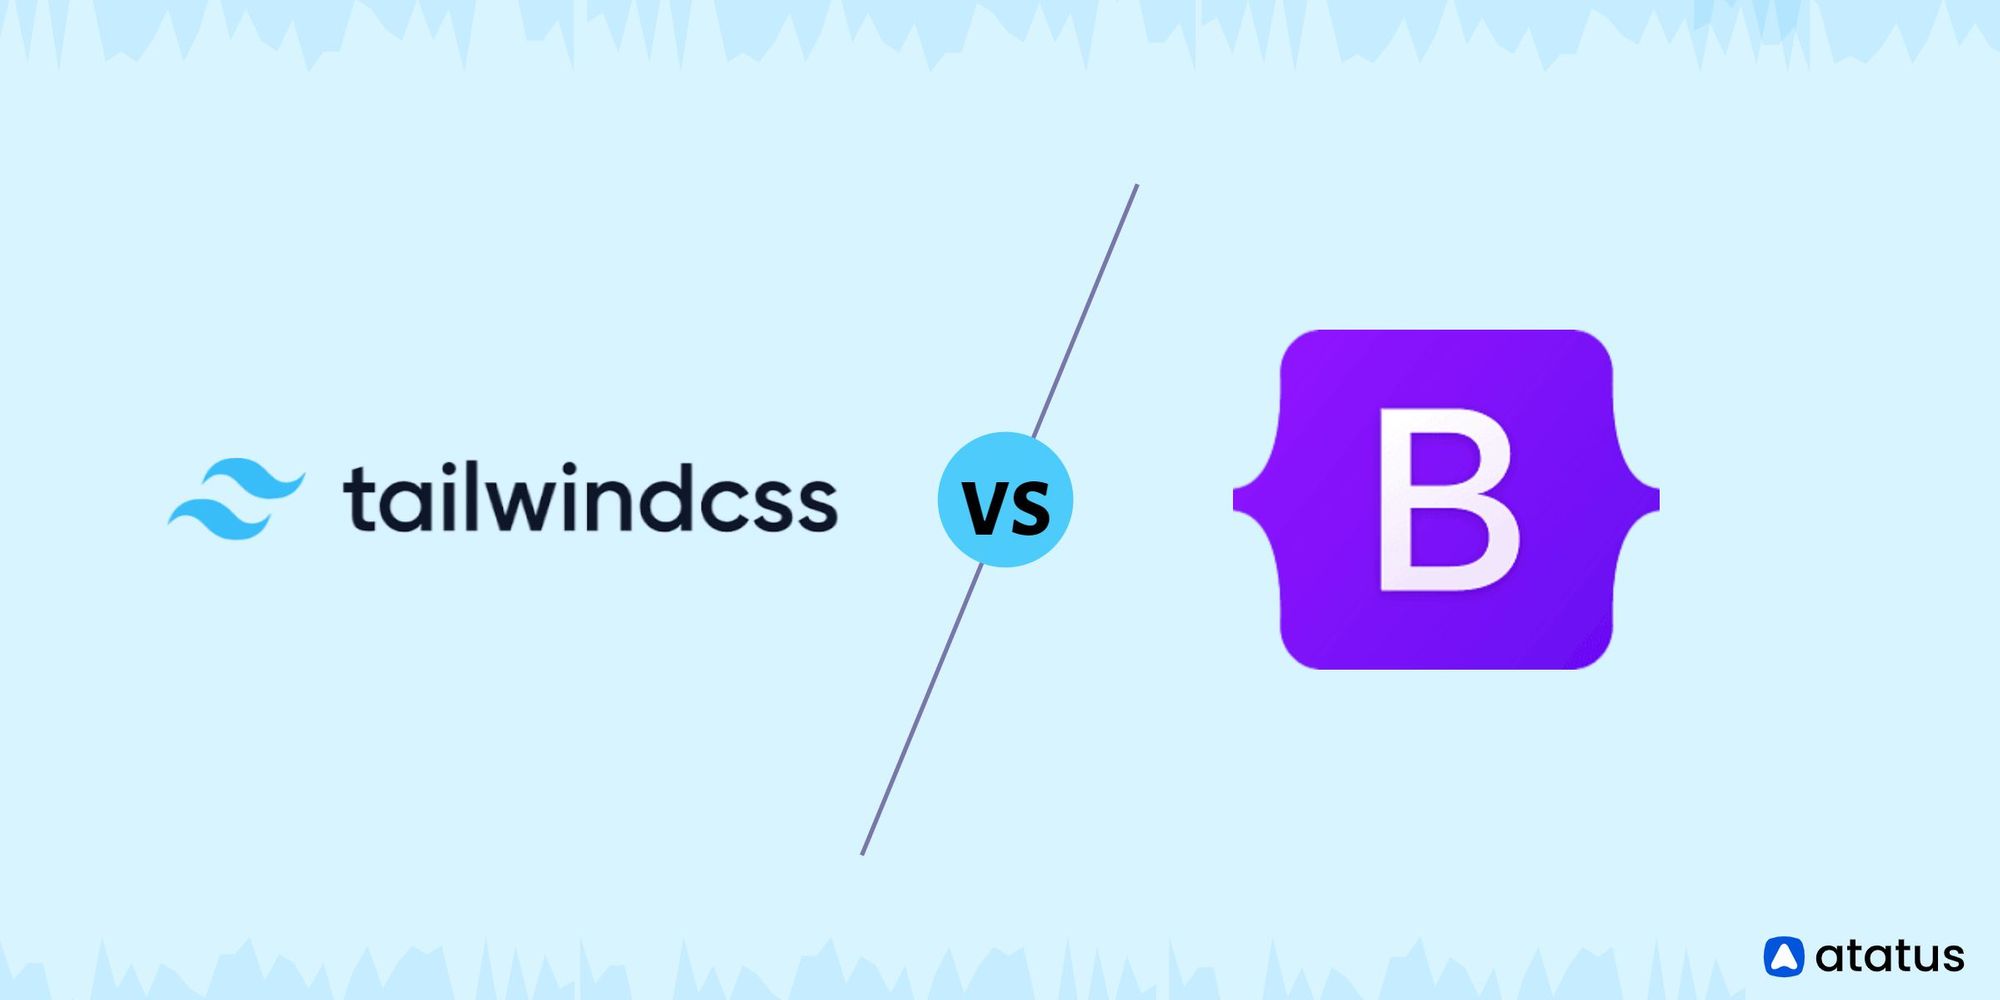 Tailwind CSS và Bootstrap là hai công cụ tuyệt vời để thiết kế trang web. Tuy nhiên, liệu Tailwind CSS có tốt hơn Bootstrap hay không? Hãy xem hình ảnh liên quan để biết được những ý kiến chuyên gia trong lĩnh vực này.